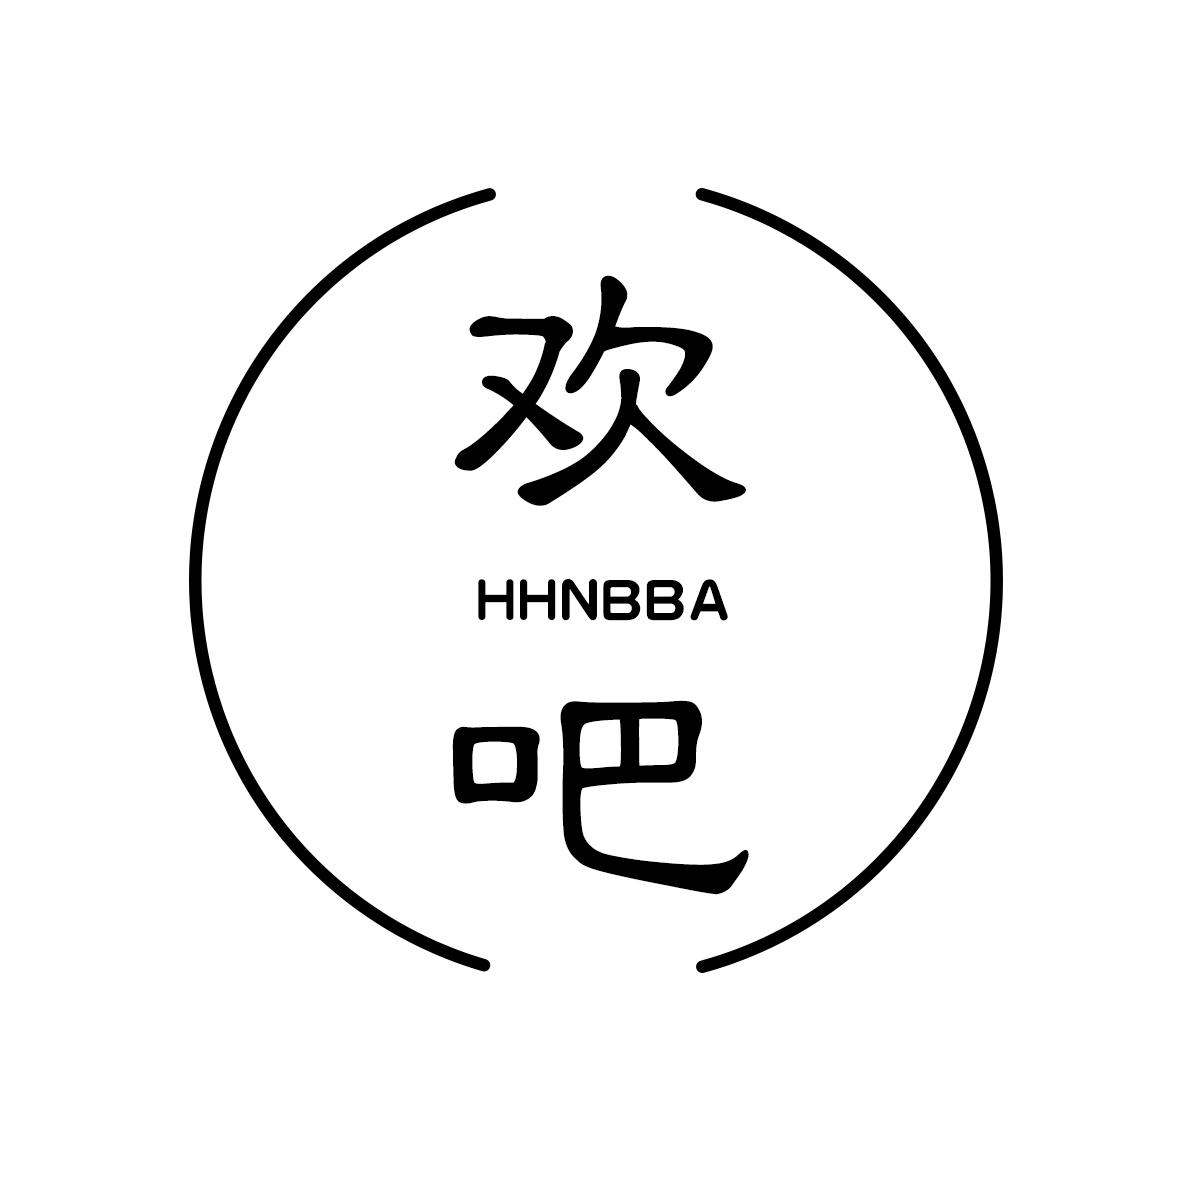 欢吧 HHNBBA 商标公告